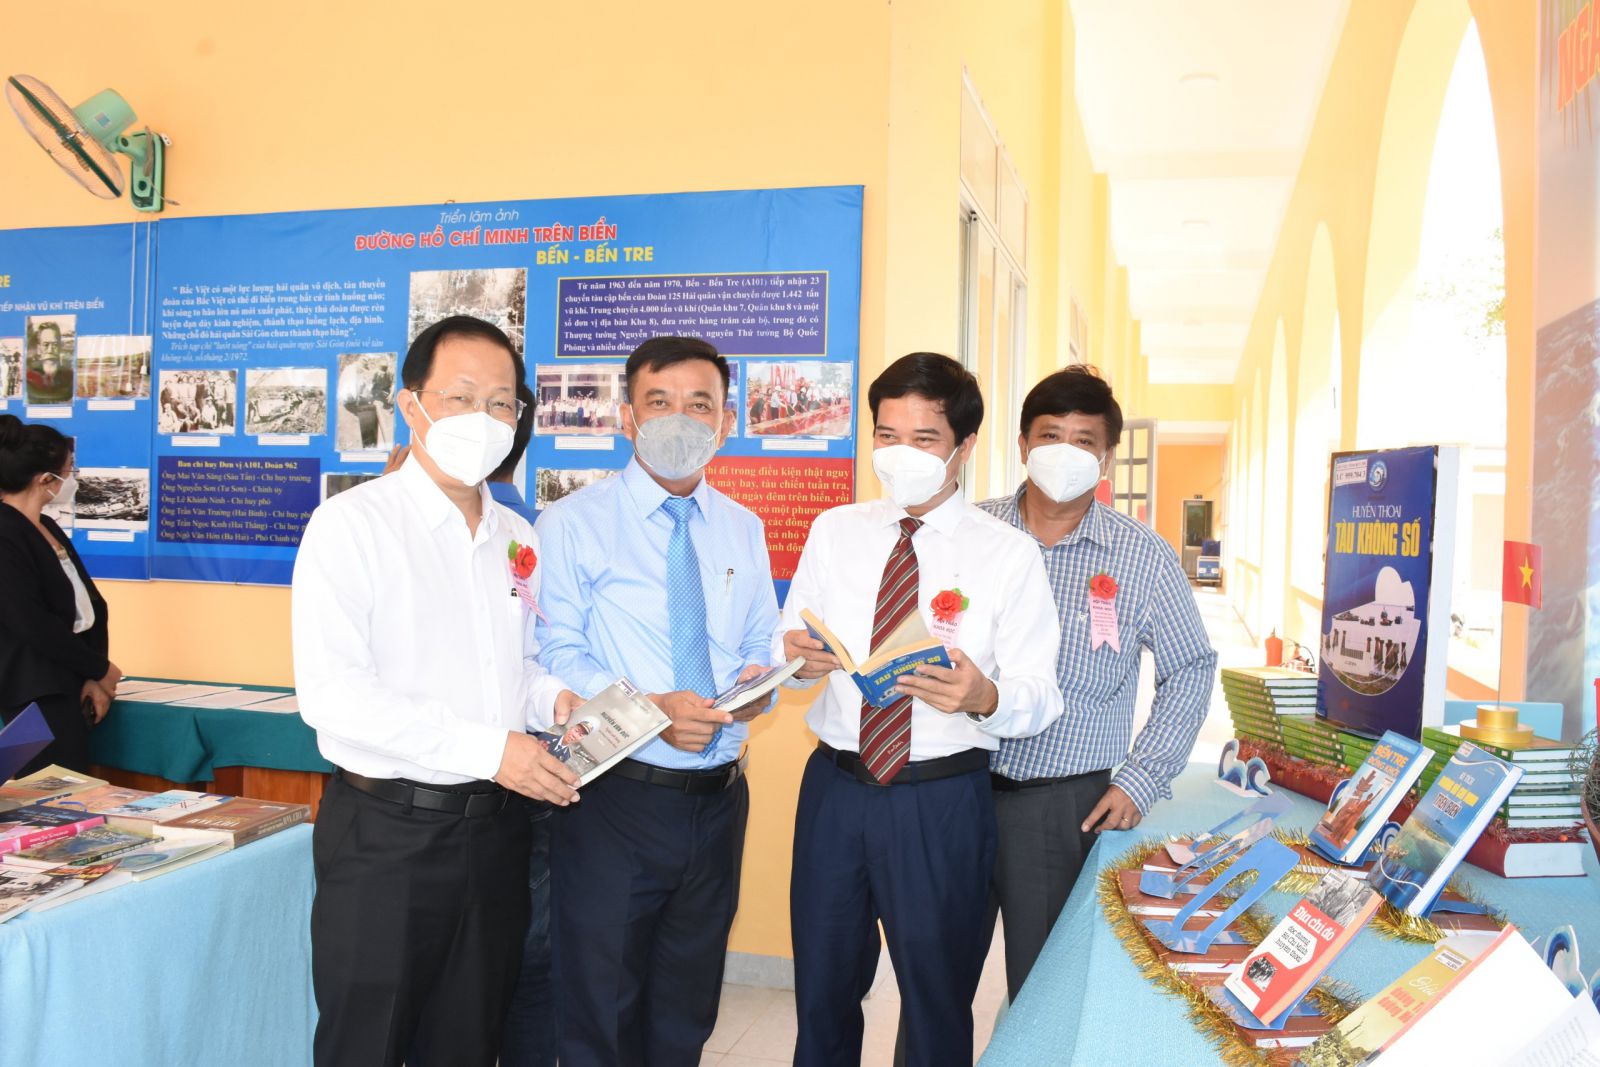 Phó chủ tịch Thường trực UBND tỉnh Nguyễn Trúc Sơn (bìa trái) cùng các đại biểu tham quan triển lãm trưng bày ảnh và sách về đường Hồ Chí Minh trên biển, bến Bến Tre.